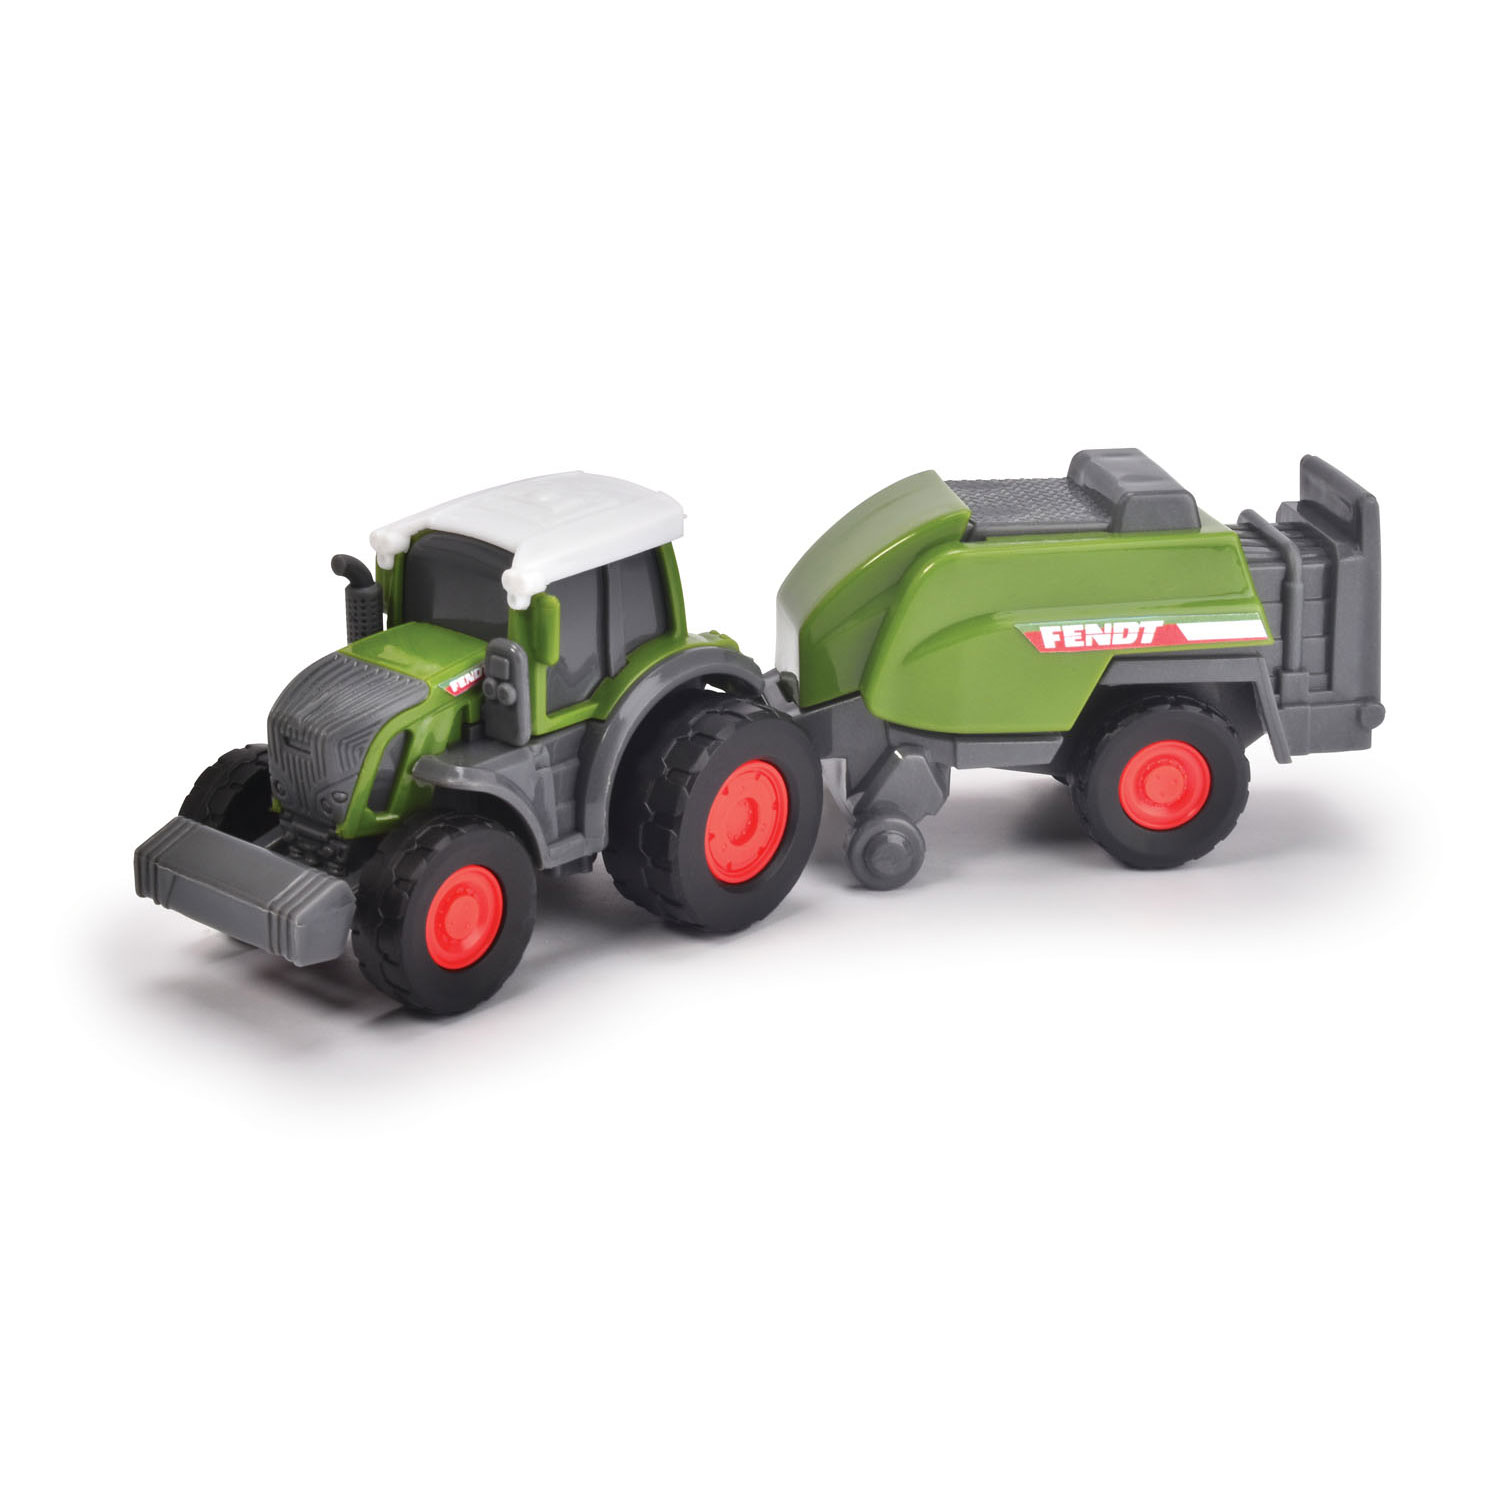 Ferngesteuerter Traktor - Entdecken Sie Spiel & Spaß im Detail